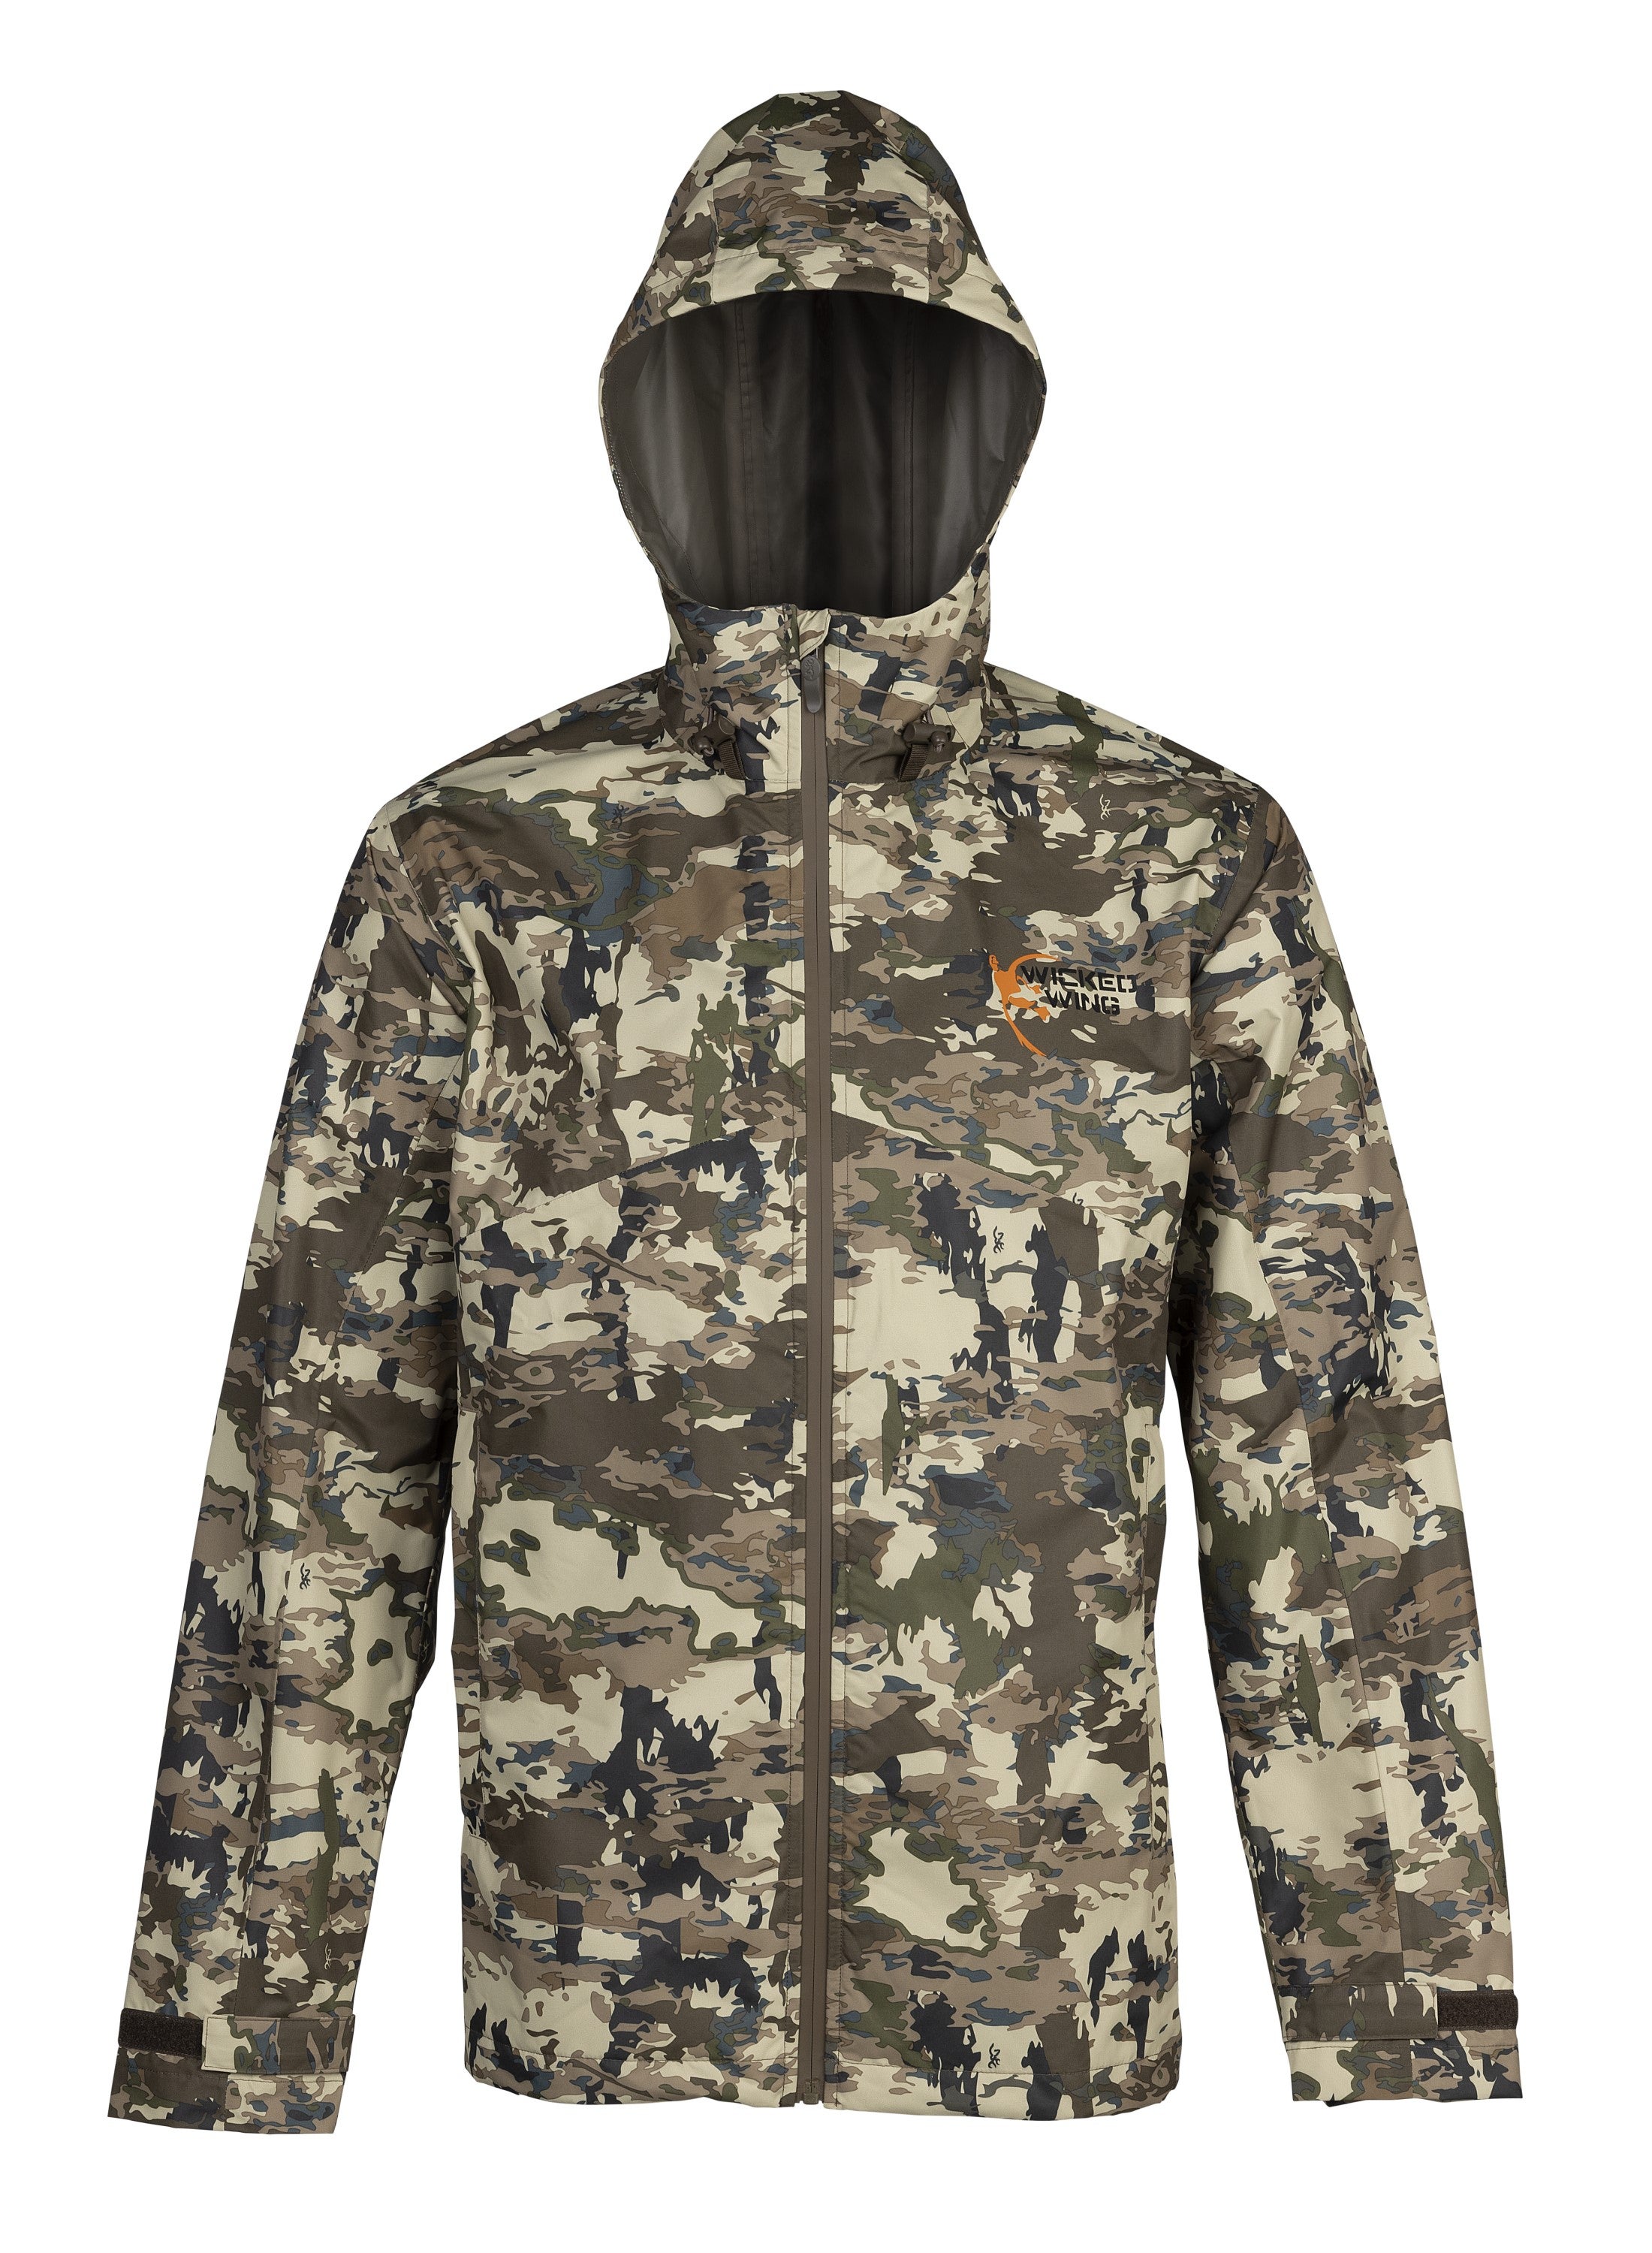 Rain Shell Jacket - Hunting Clothing - Browning